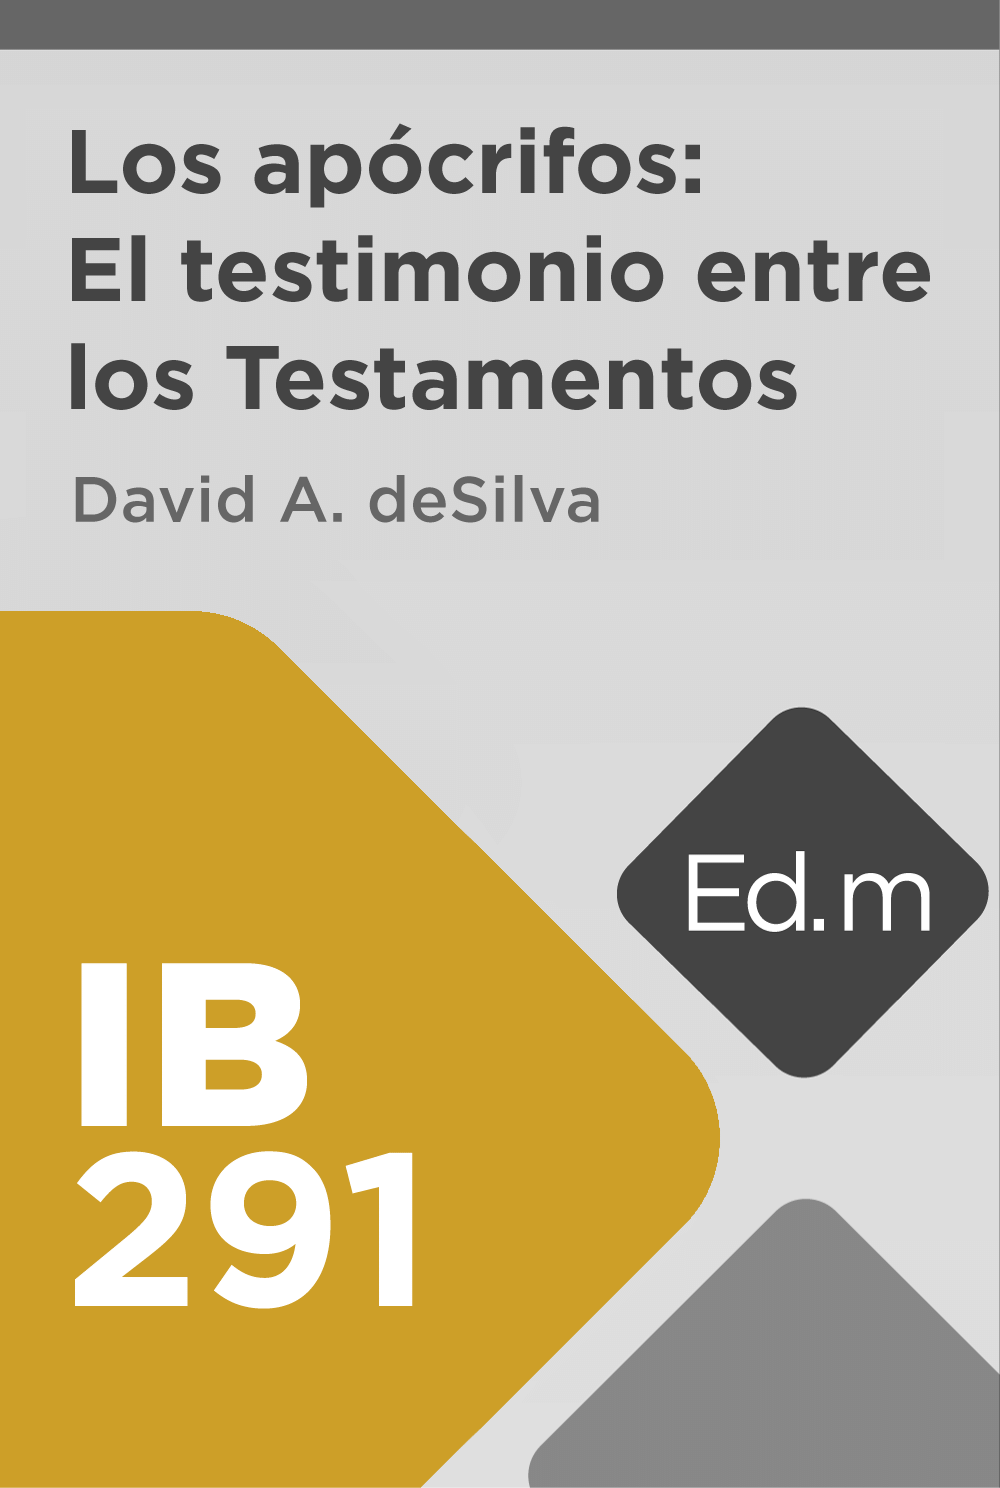 Ed. Móvil: IB291 Los apócrifos: El testimonio entre los Testamentos